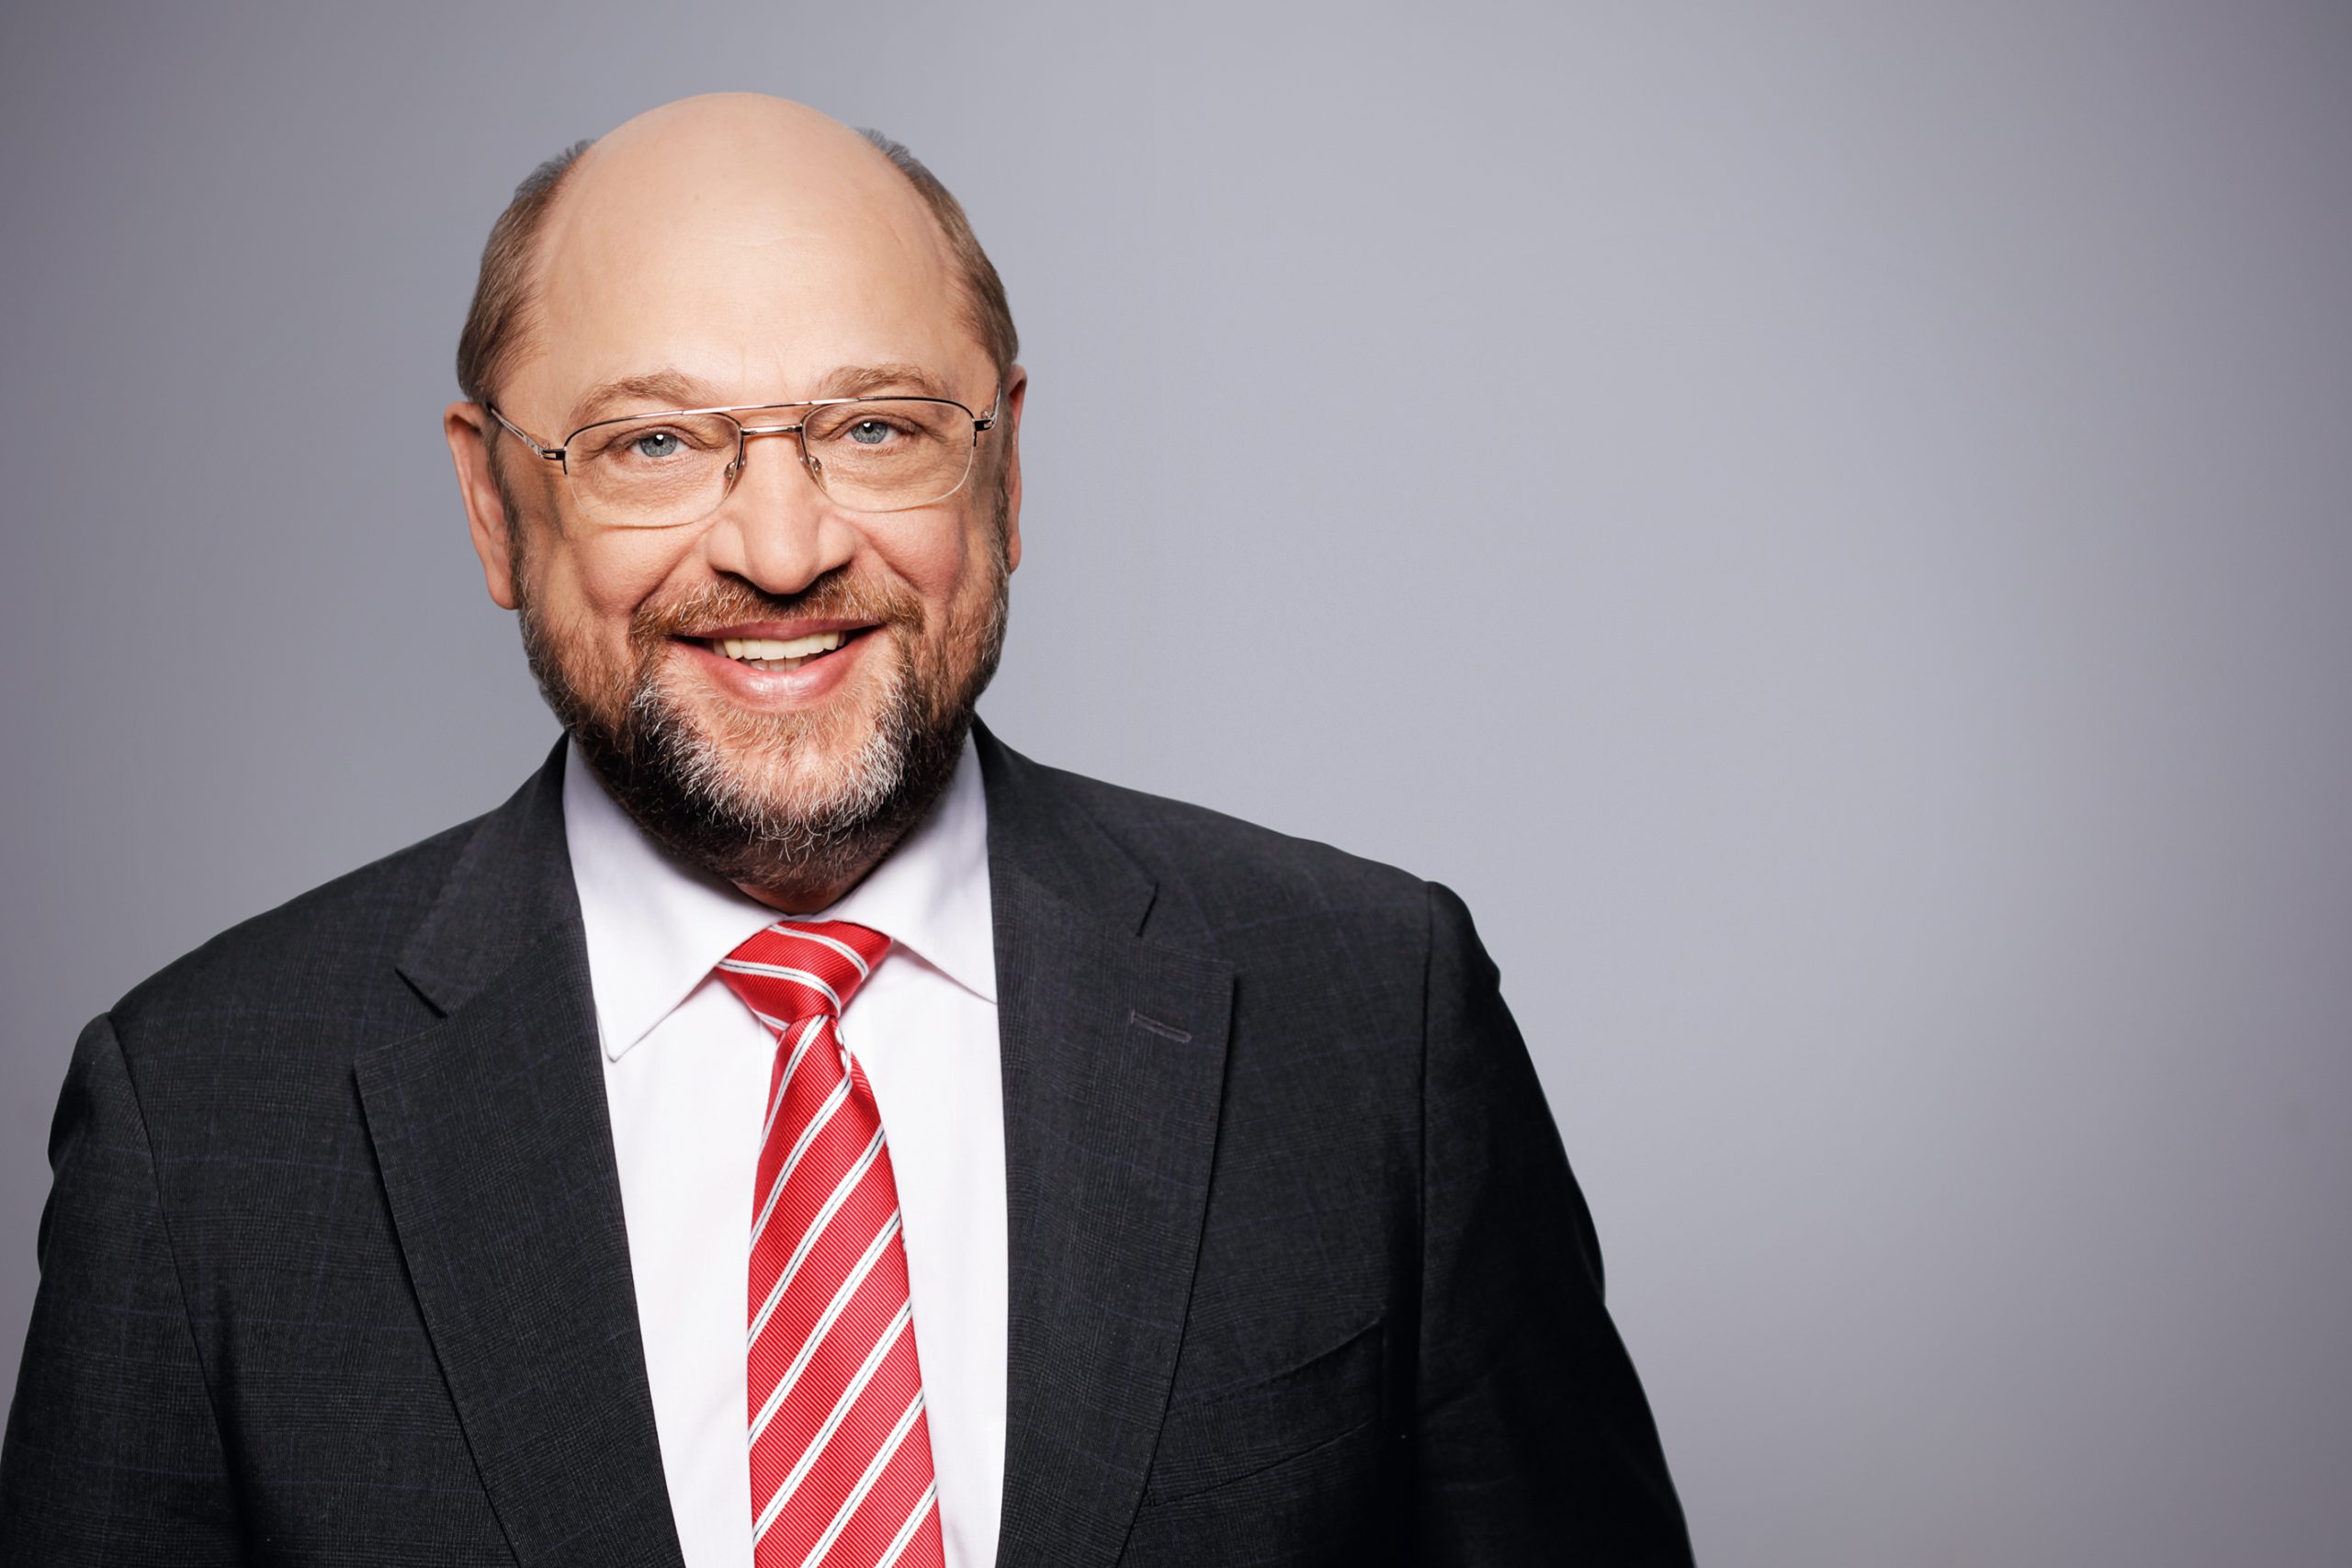 Bundestagswahl 2017 Martin Schulz Kanzlerkandidat|Bundestagswahl 2017 Angela Merkel Kanzlerkandidatin